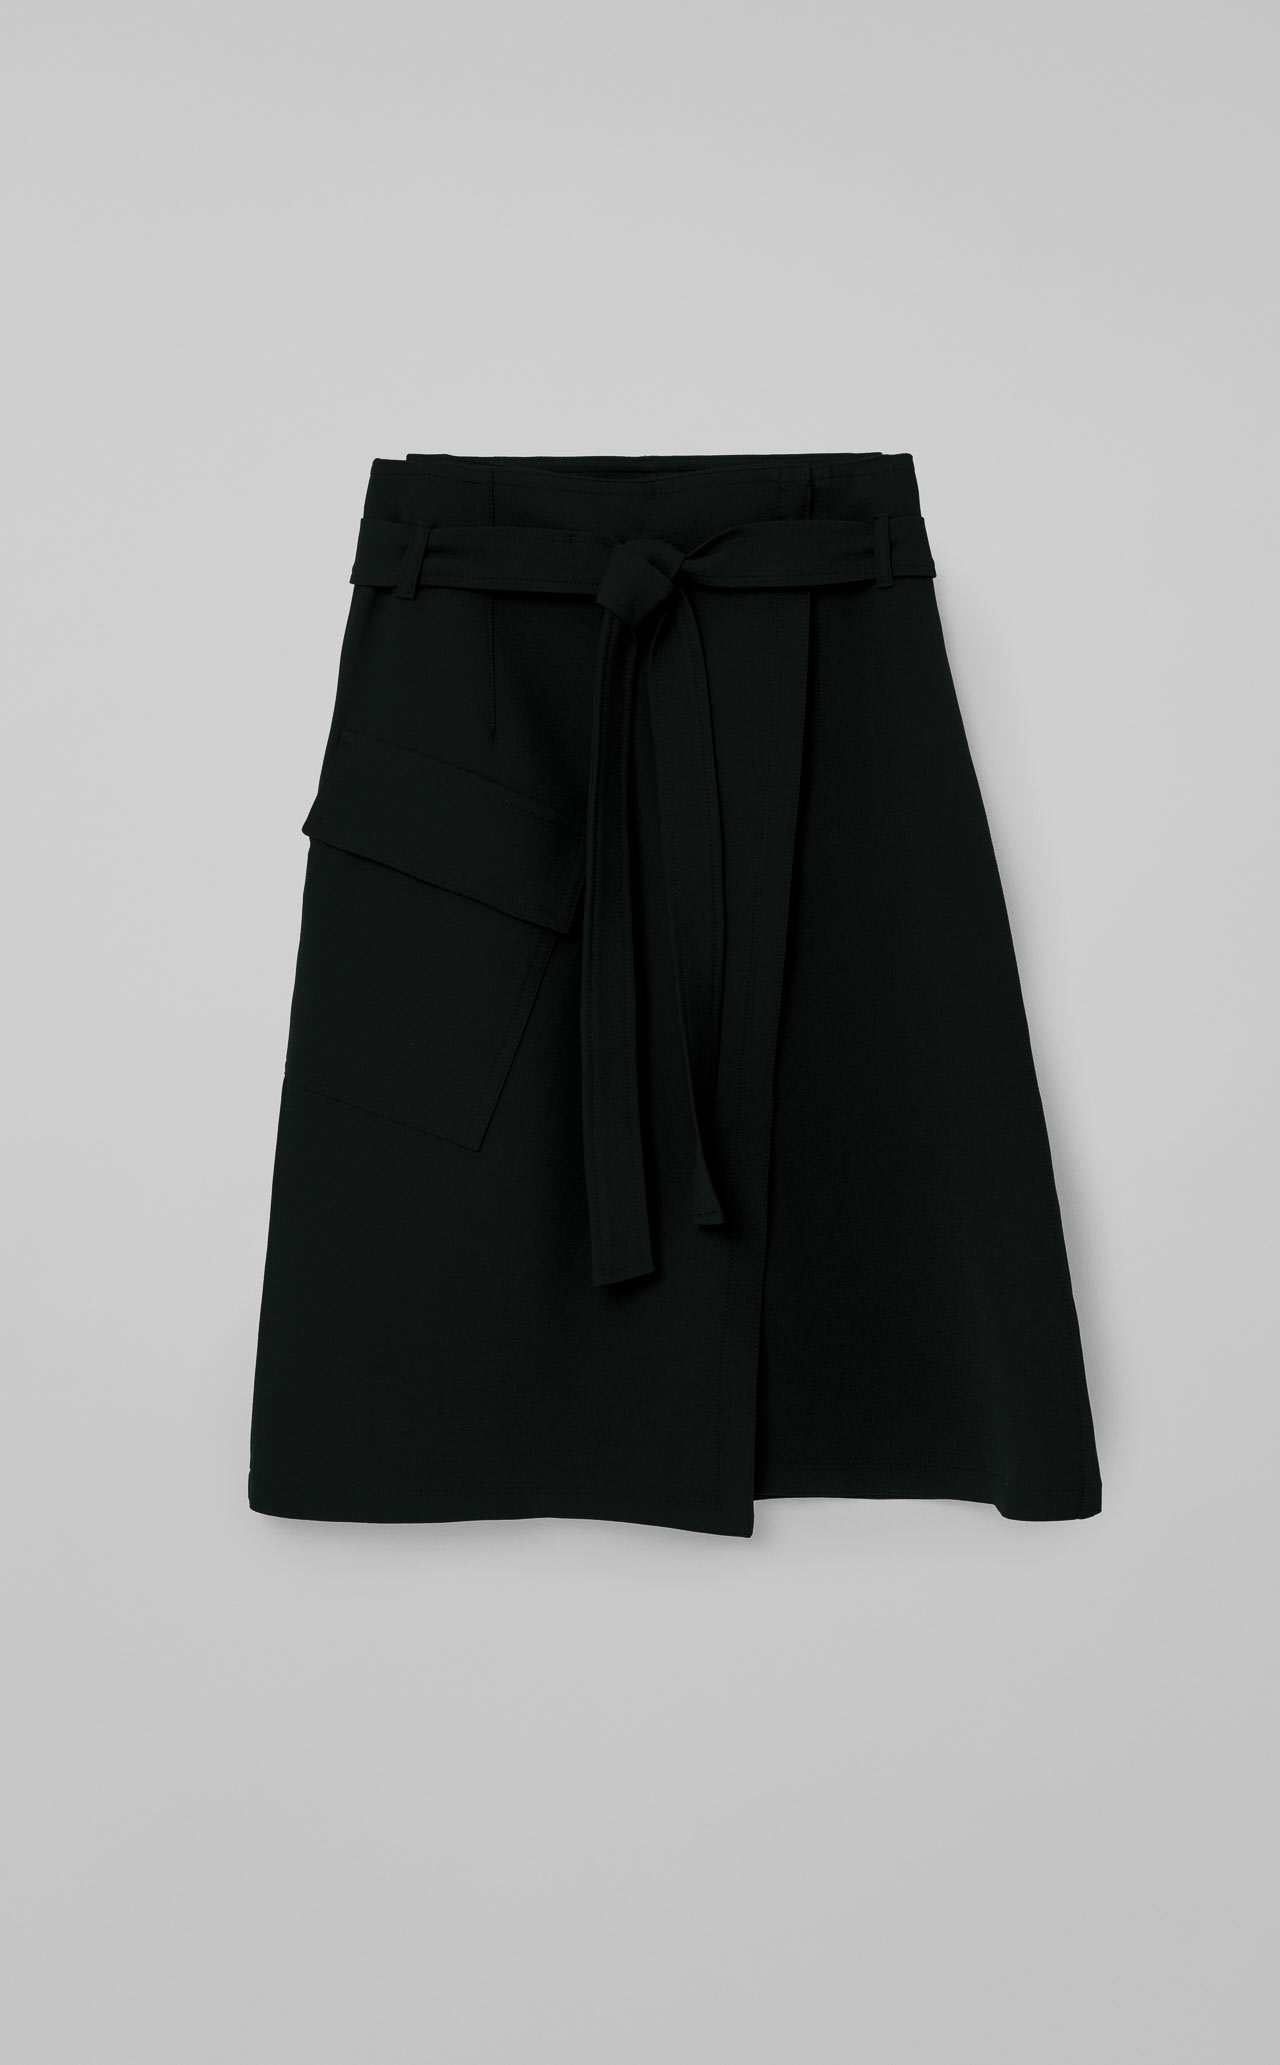 Brief Skirt